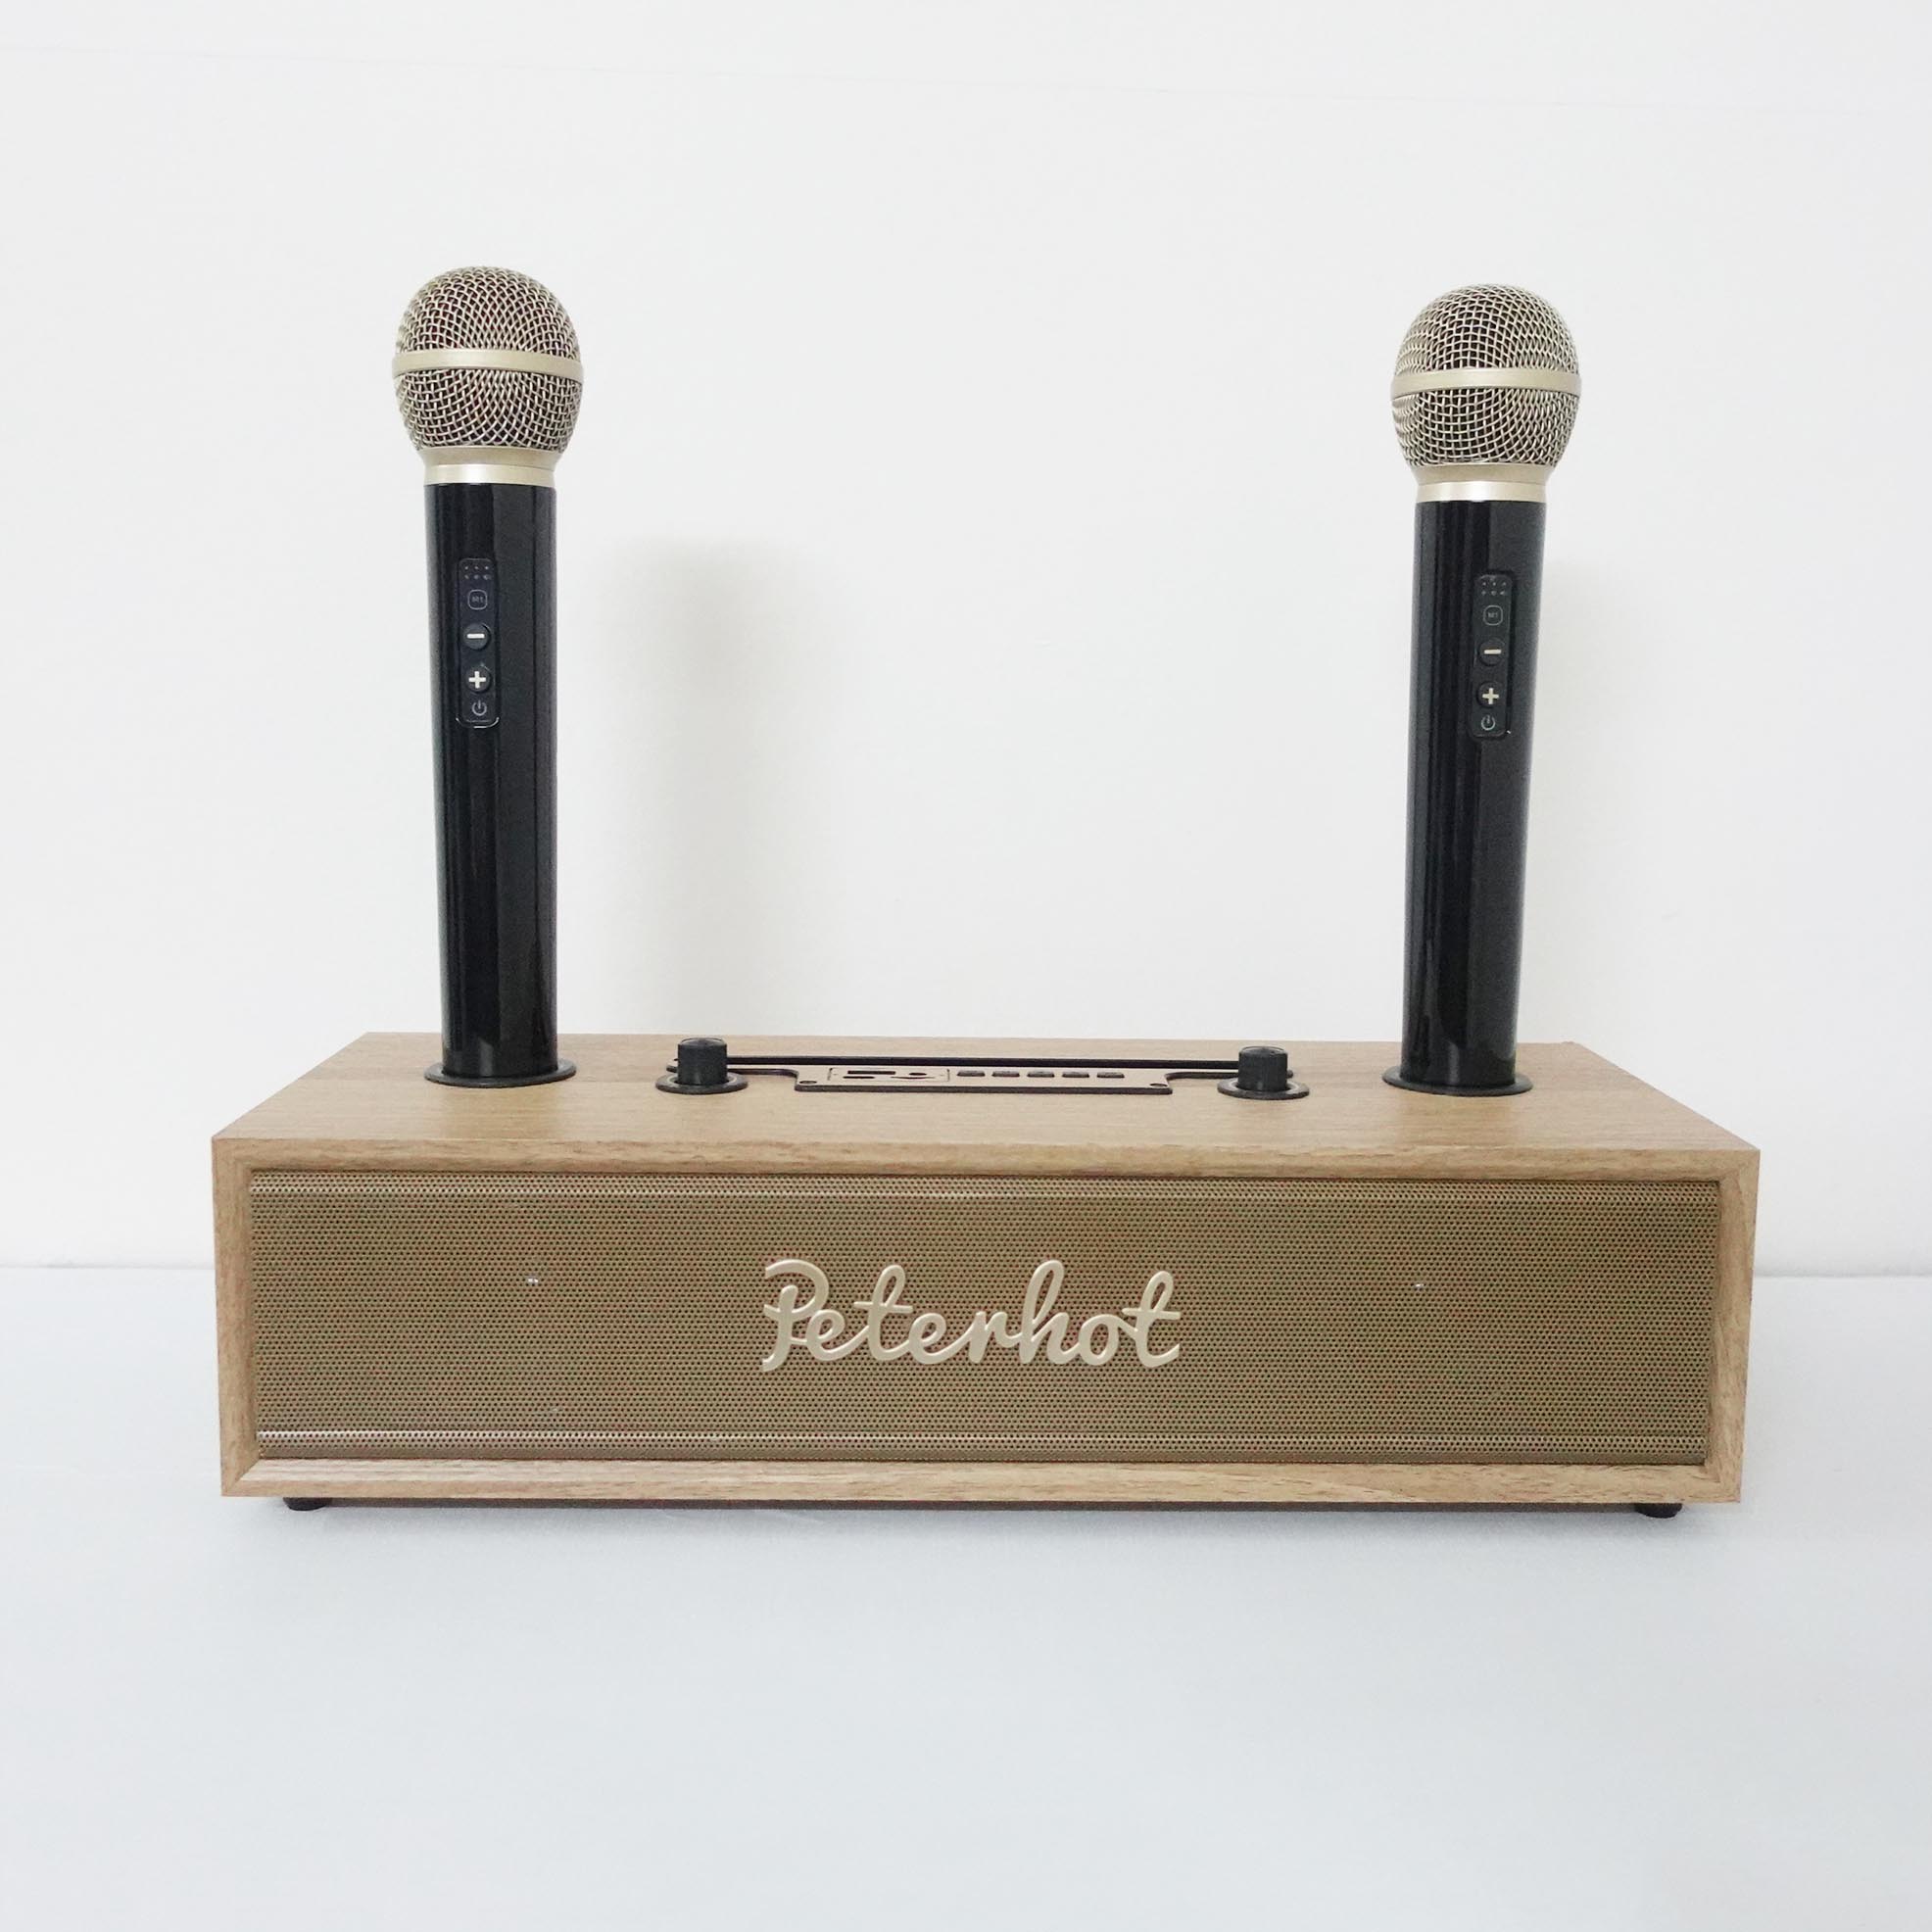 Loa Bluetooth karaoke PETERHOT A100 tặng kèm 2 tay micro không dây